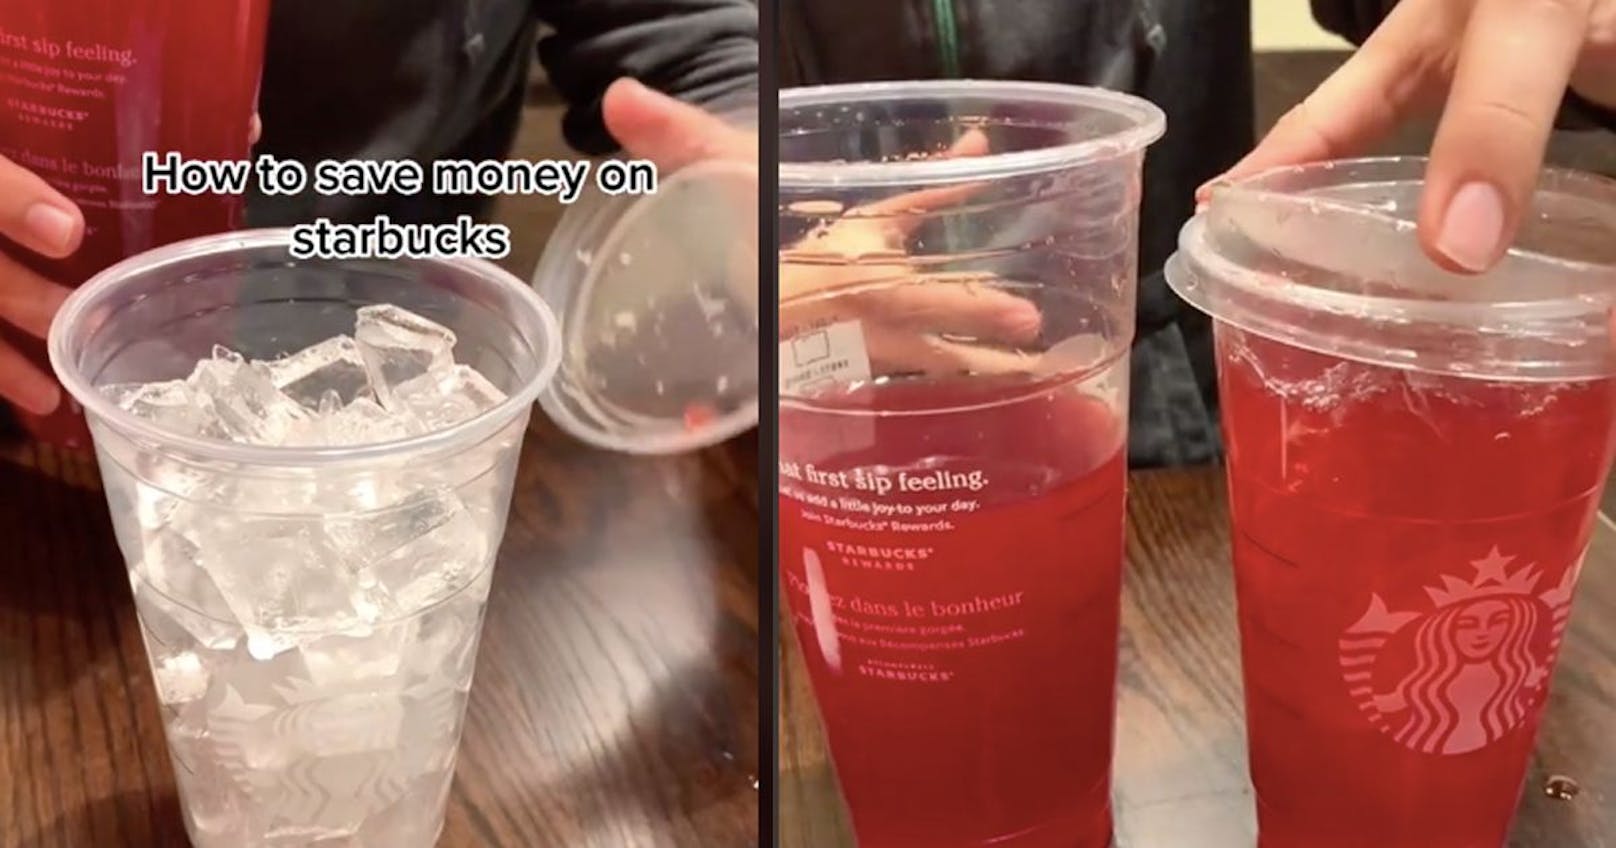 Starbucks-Barista verrät Trick für Gratis-Getränk